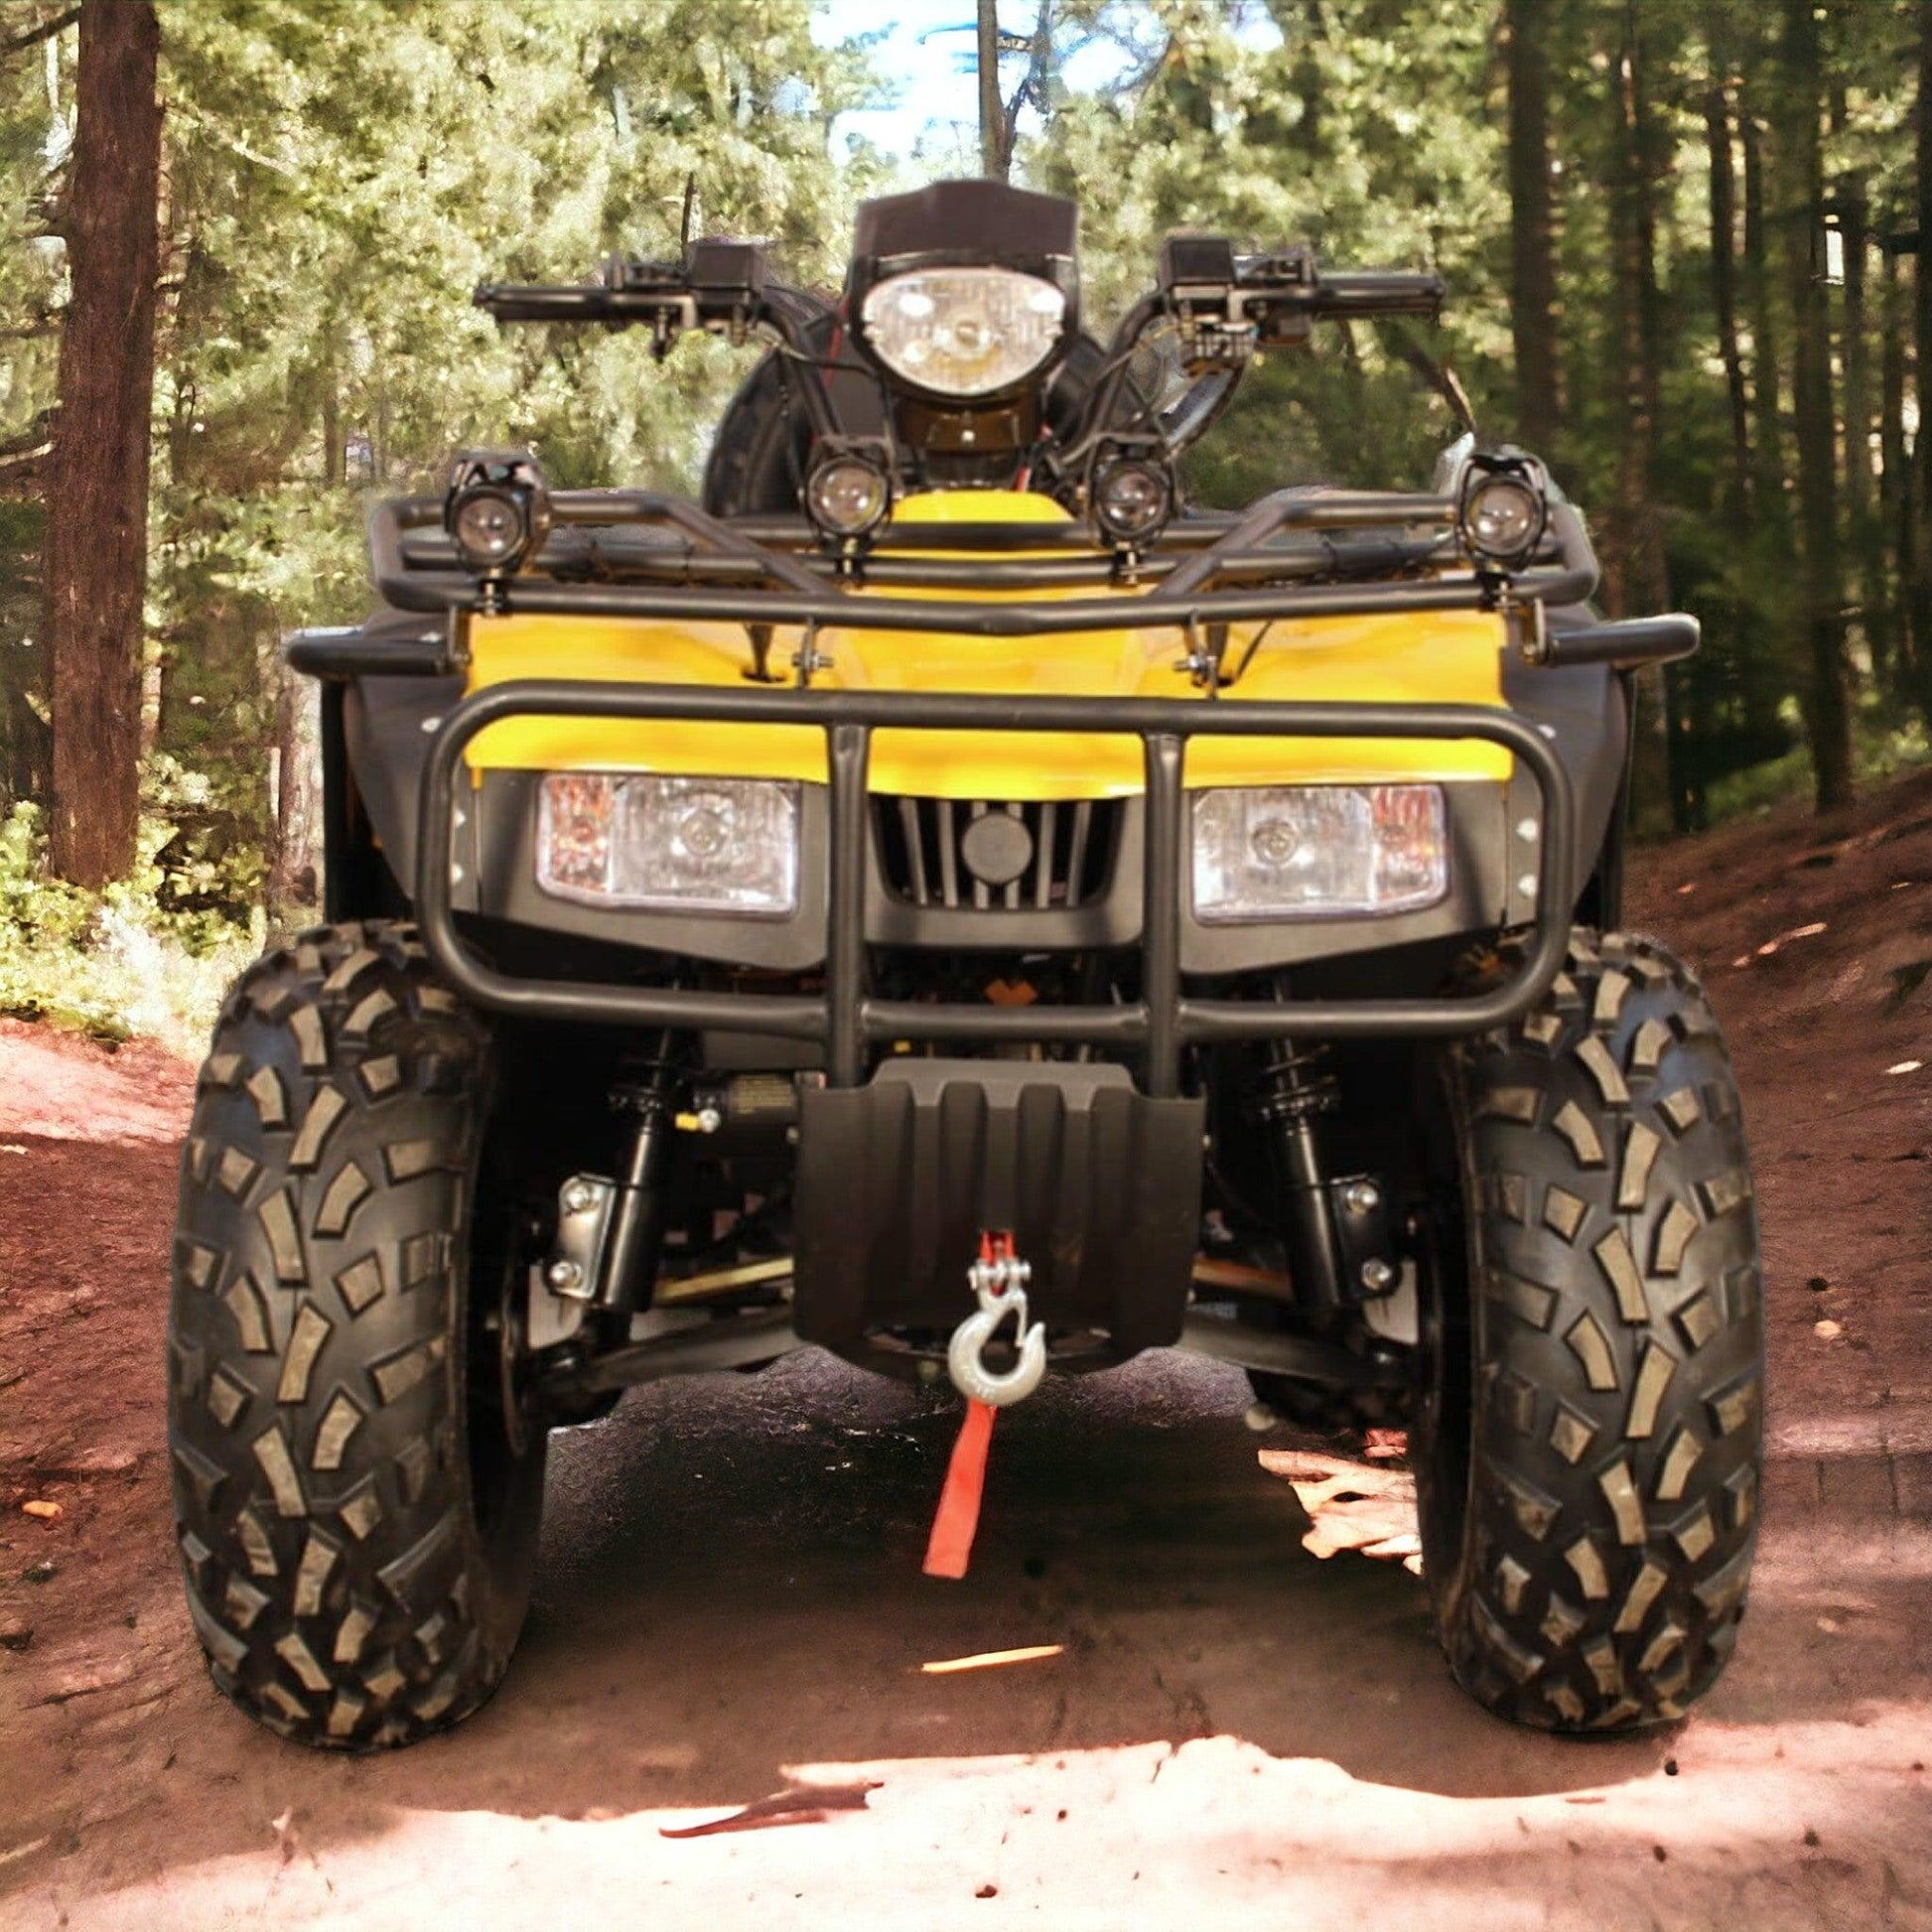 PATOYS | Super Hunk Atv 250cc (Yellow) ATVs & UTVs PATOYS